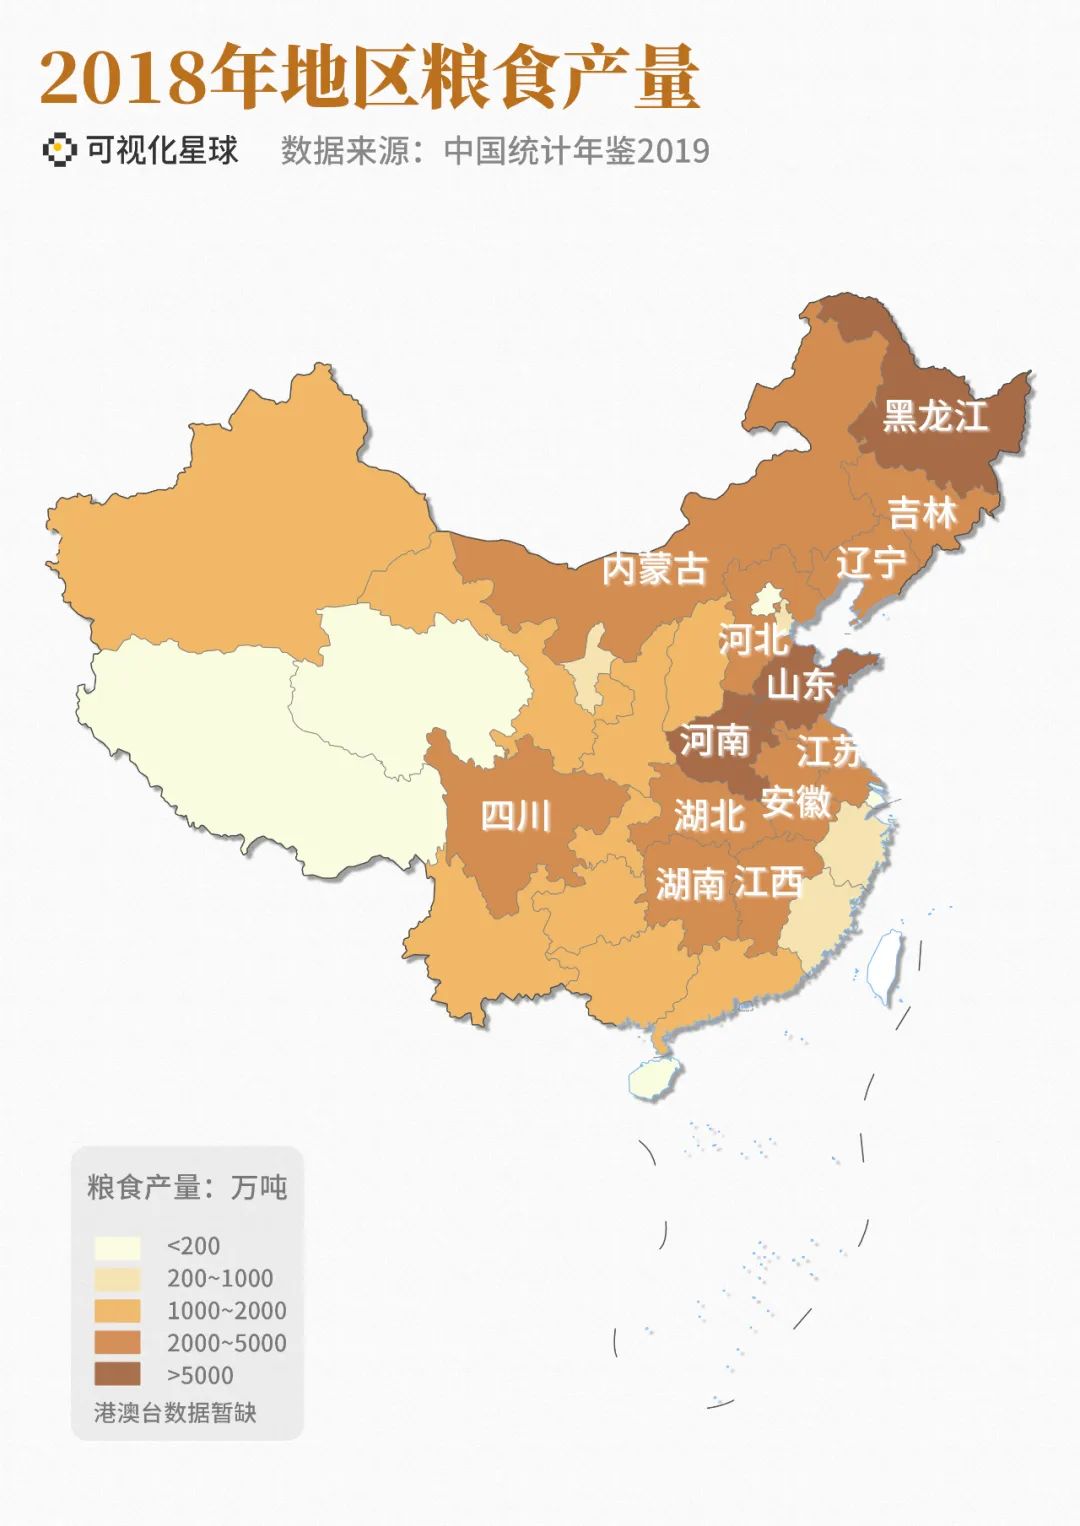 中国粮食分布图制作图片